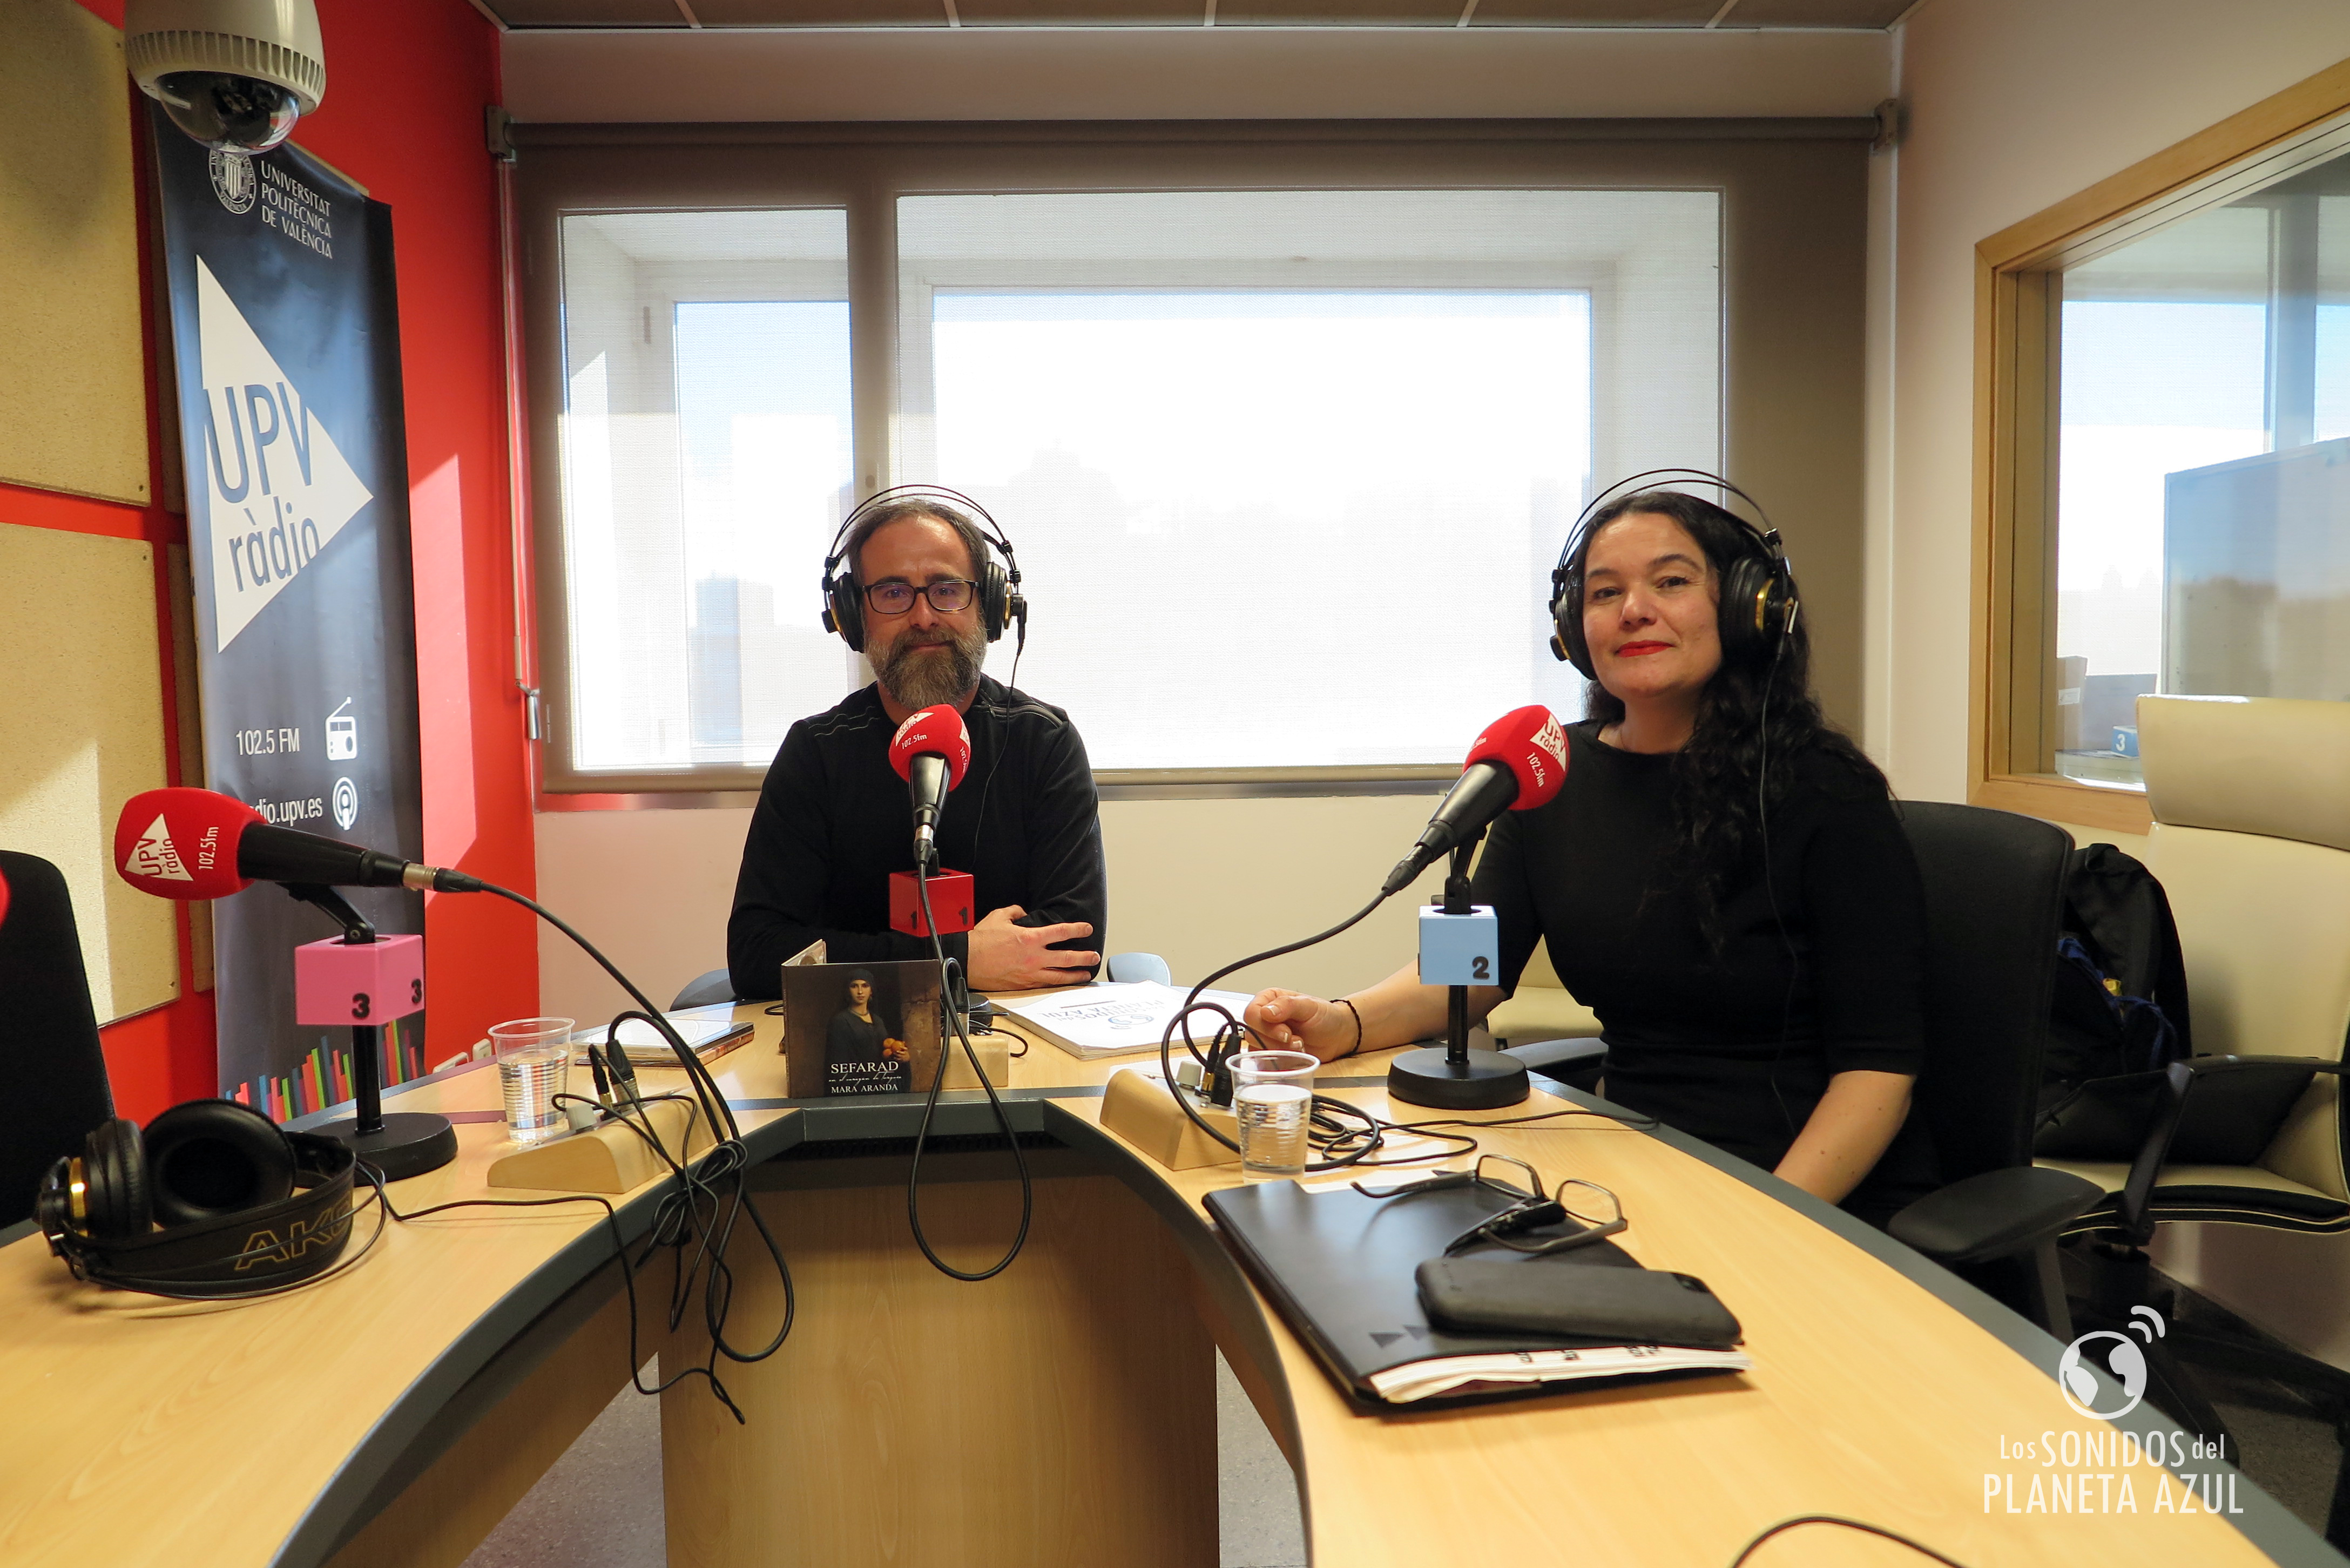 Grabación de la entrevista en los estudios de UPV Ràdio en València.